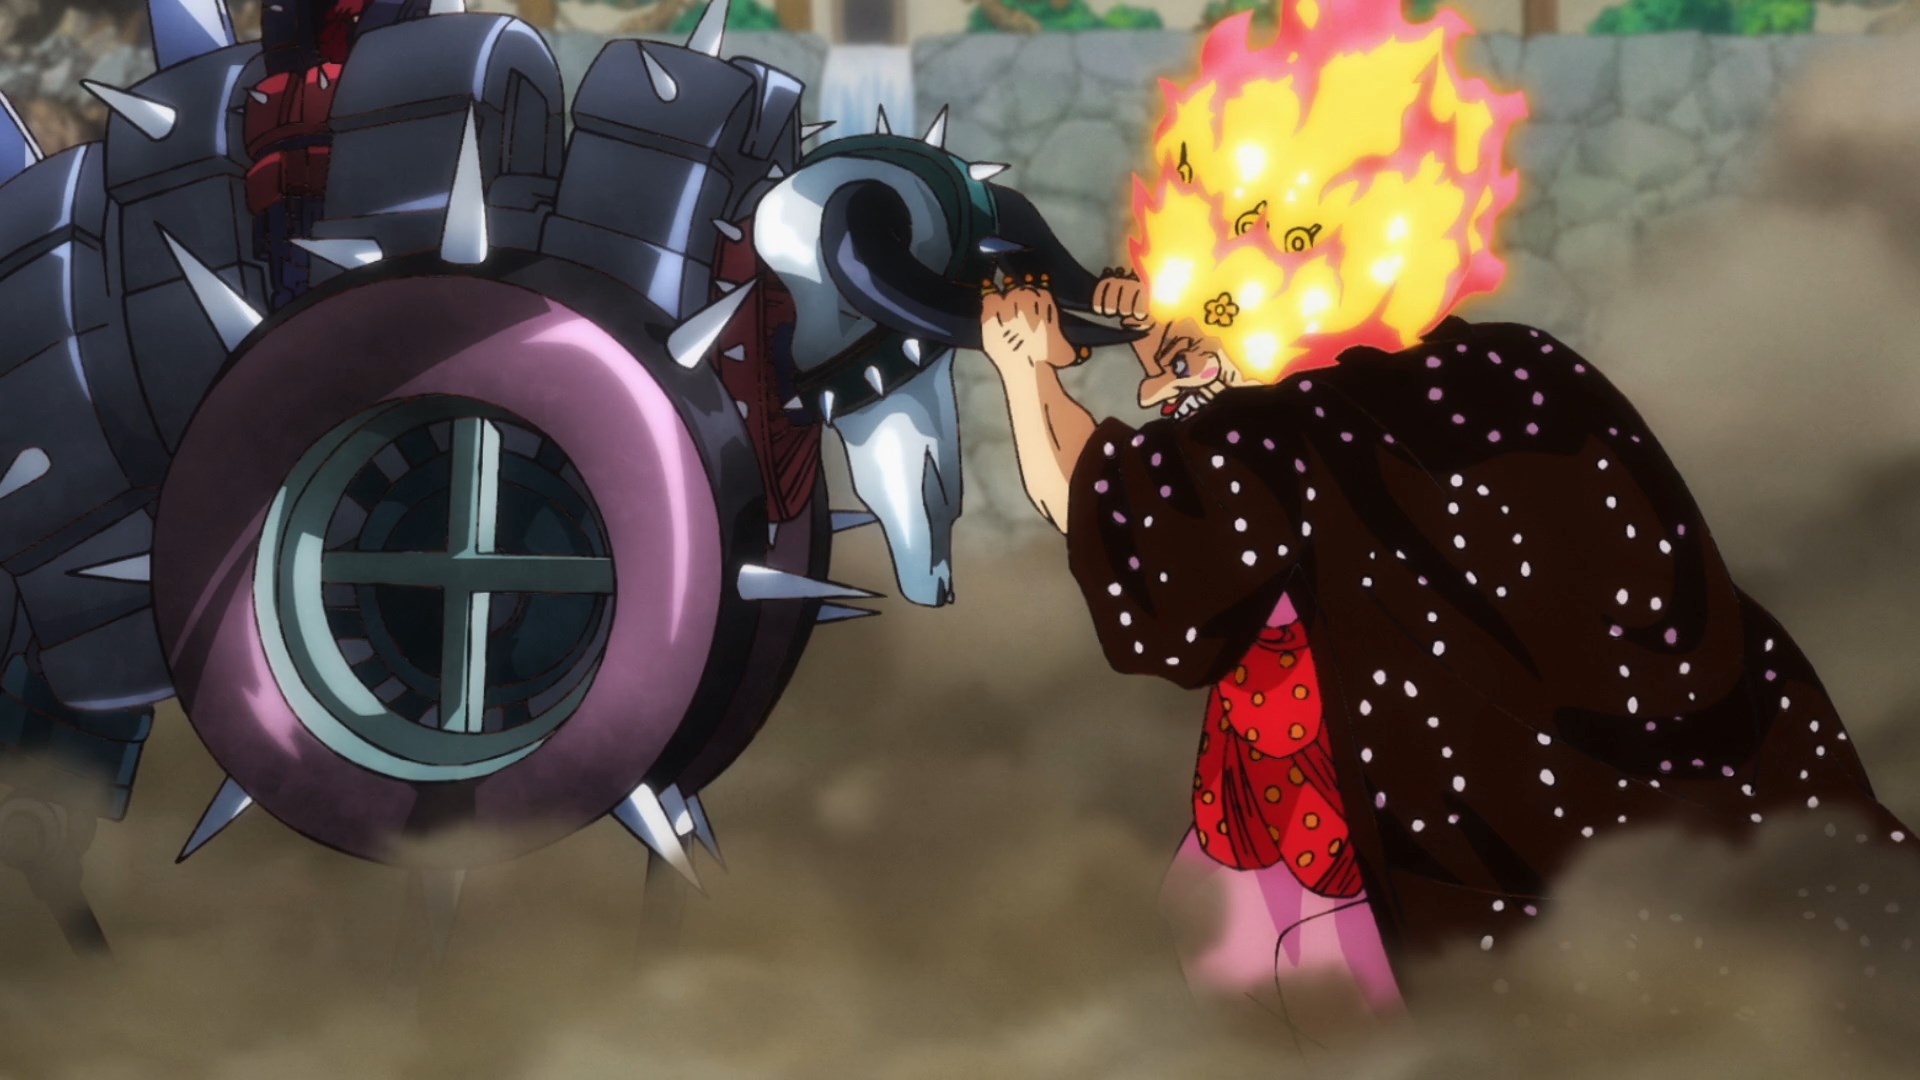 1066 серия аниме "One Piece"- - Форум поклонников "One Piece"